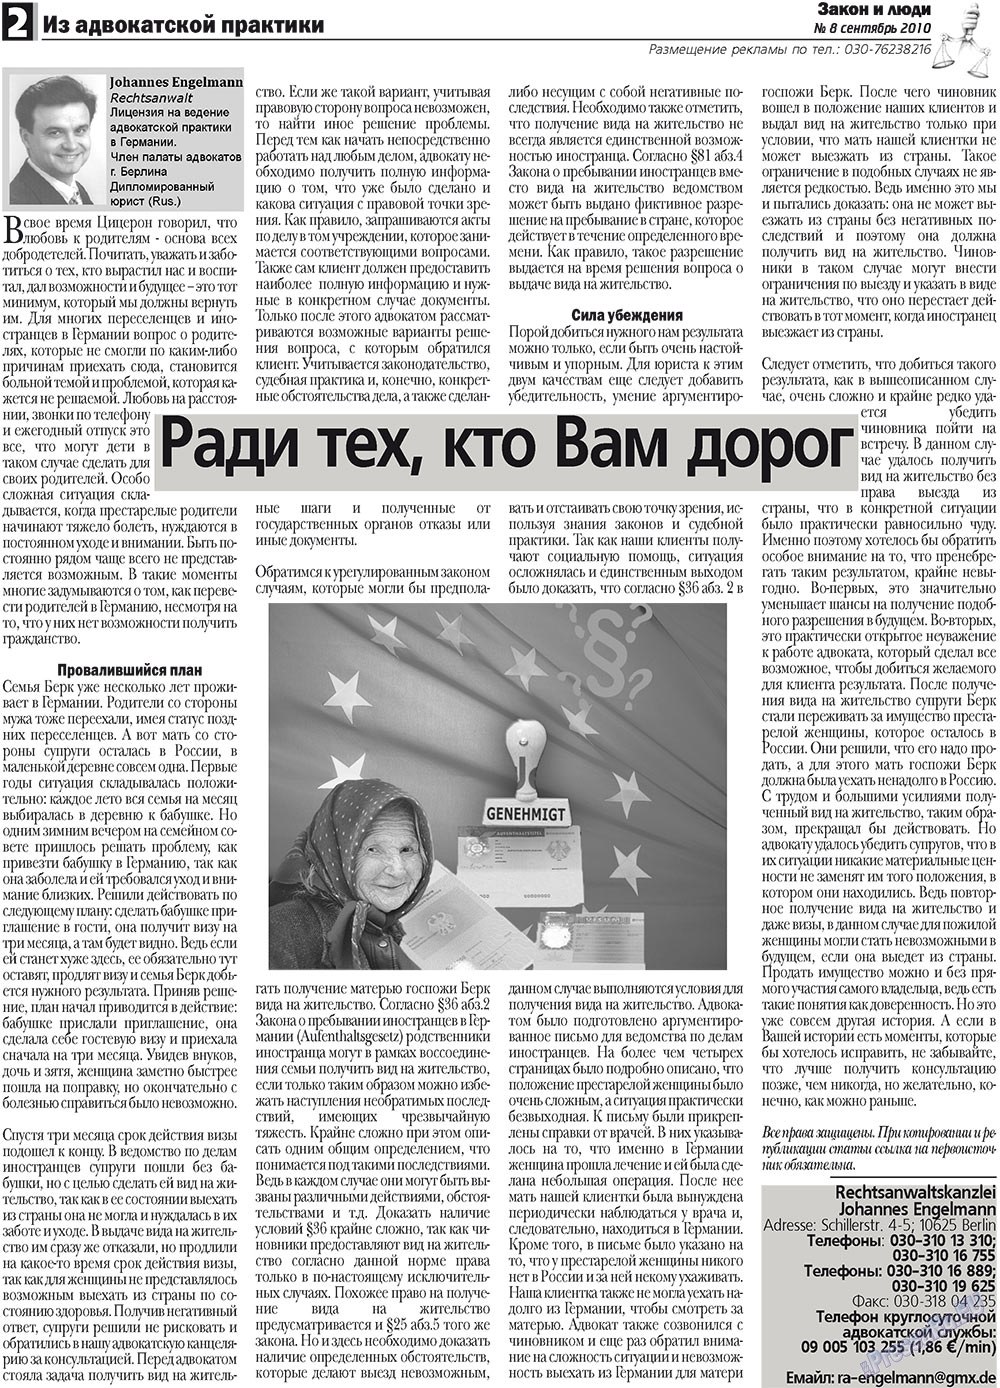 Zakon i ludi (Zeitung). 2010 Jahr, Ausgabe 8, Seite 2